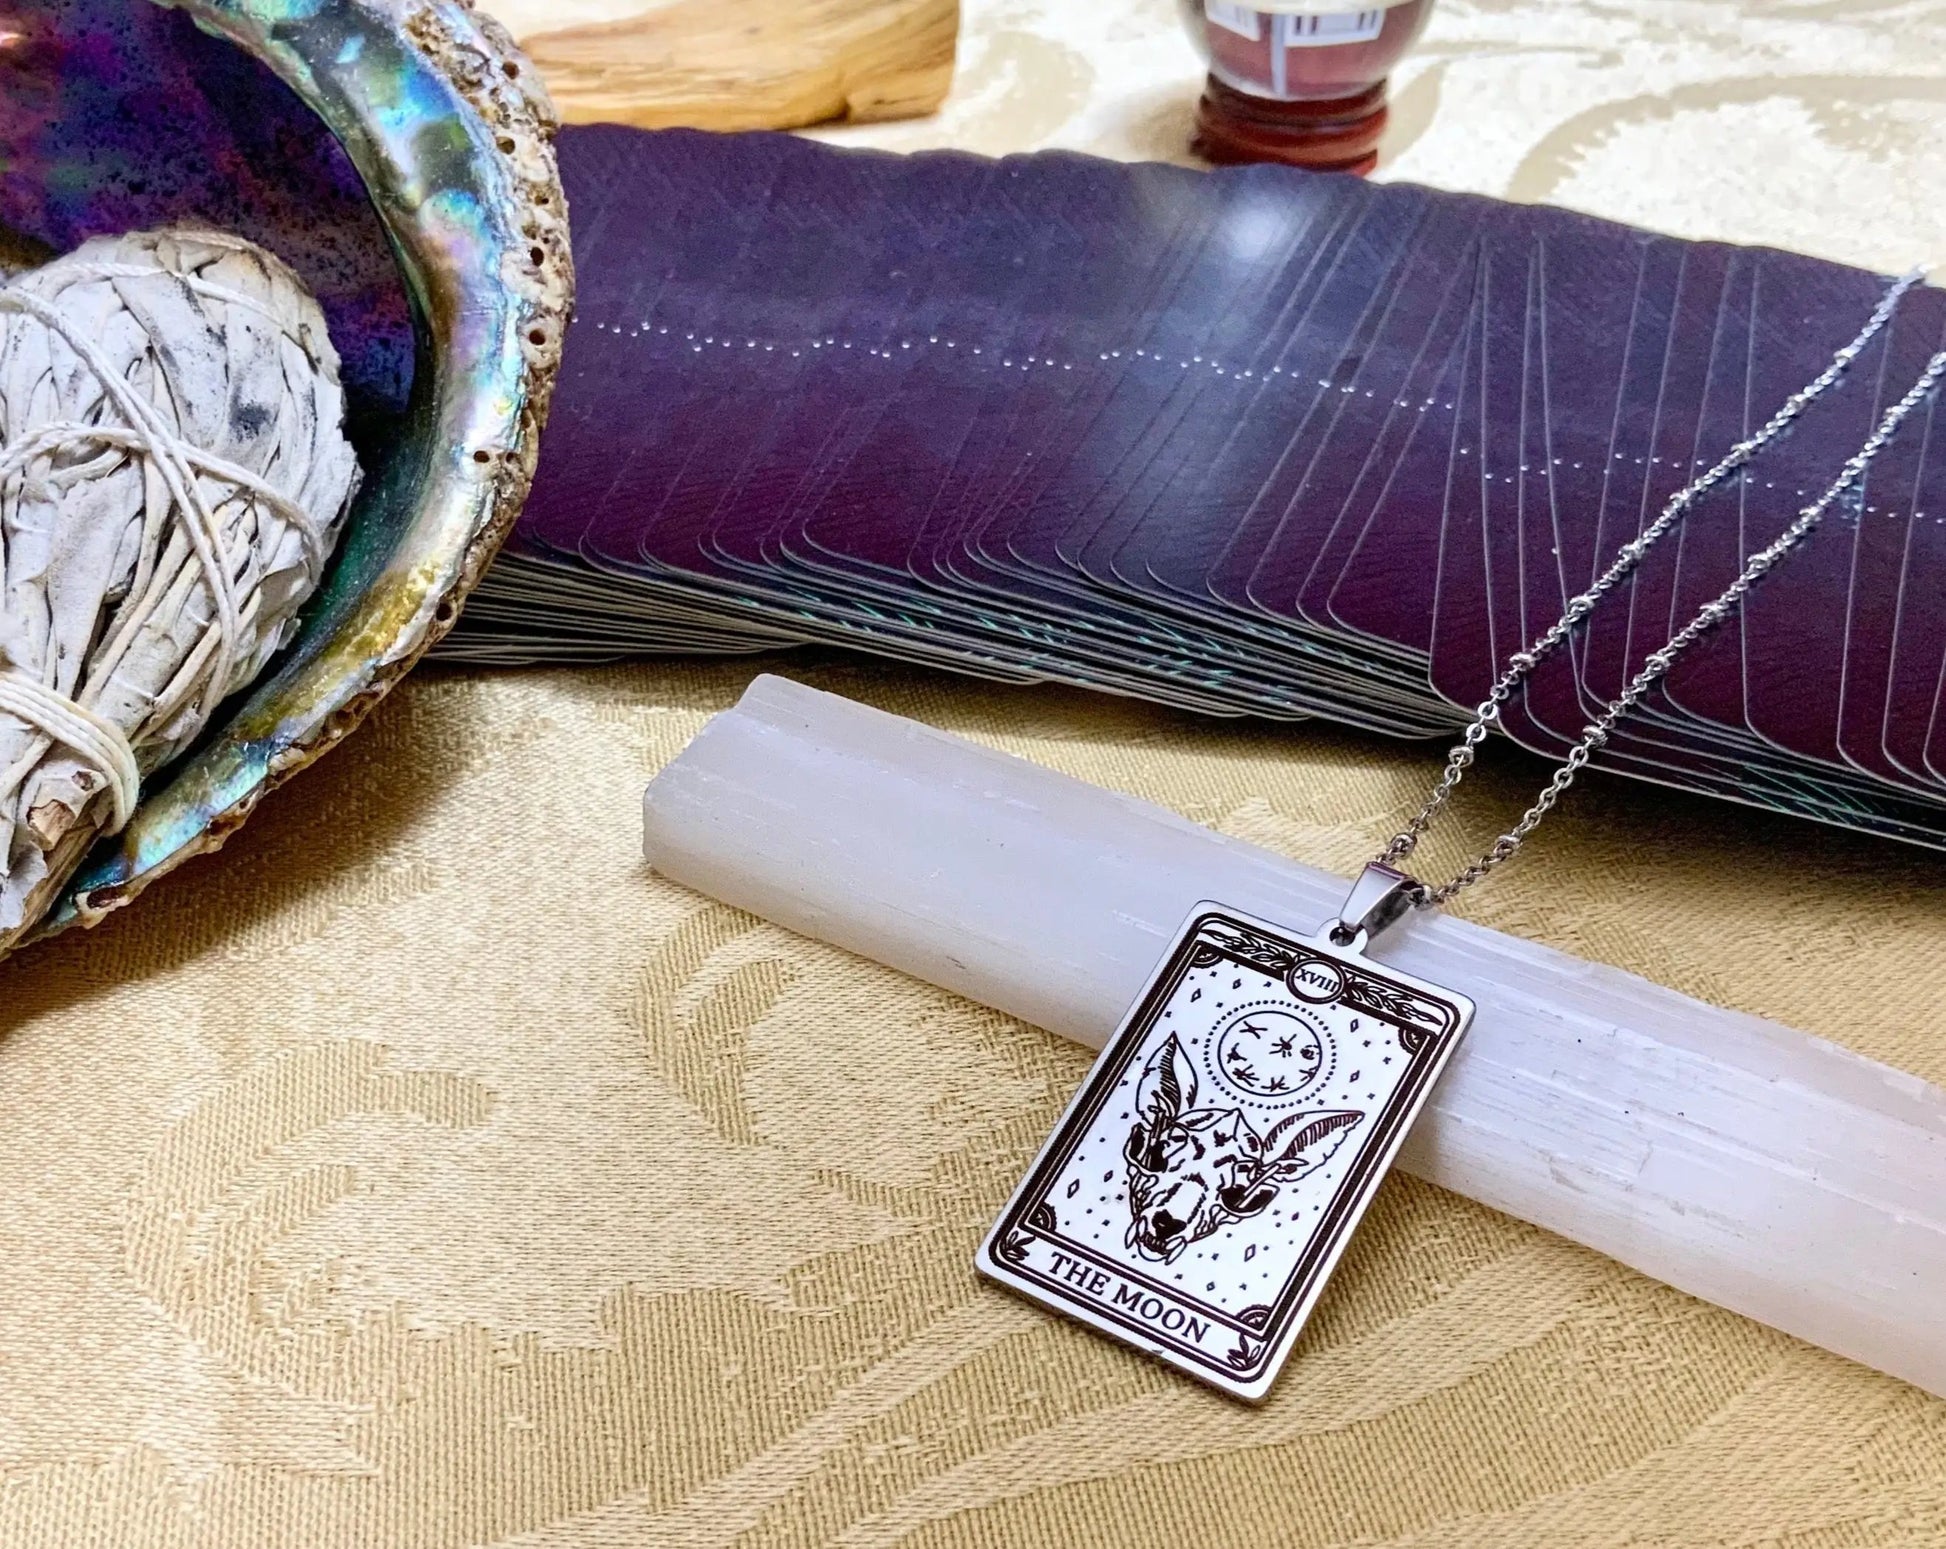 the moon tarot card necklace pendant - silver tarot